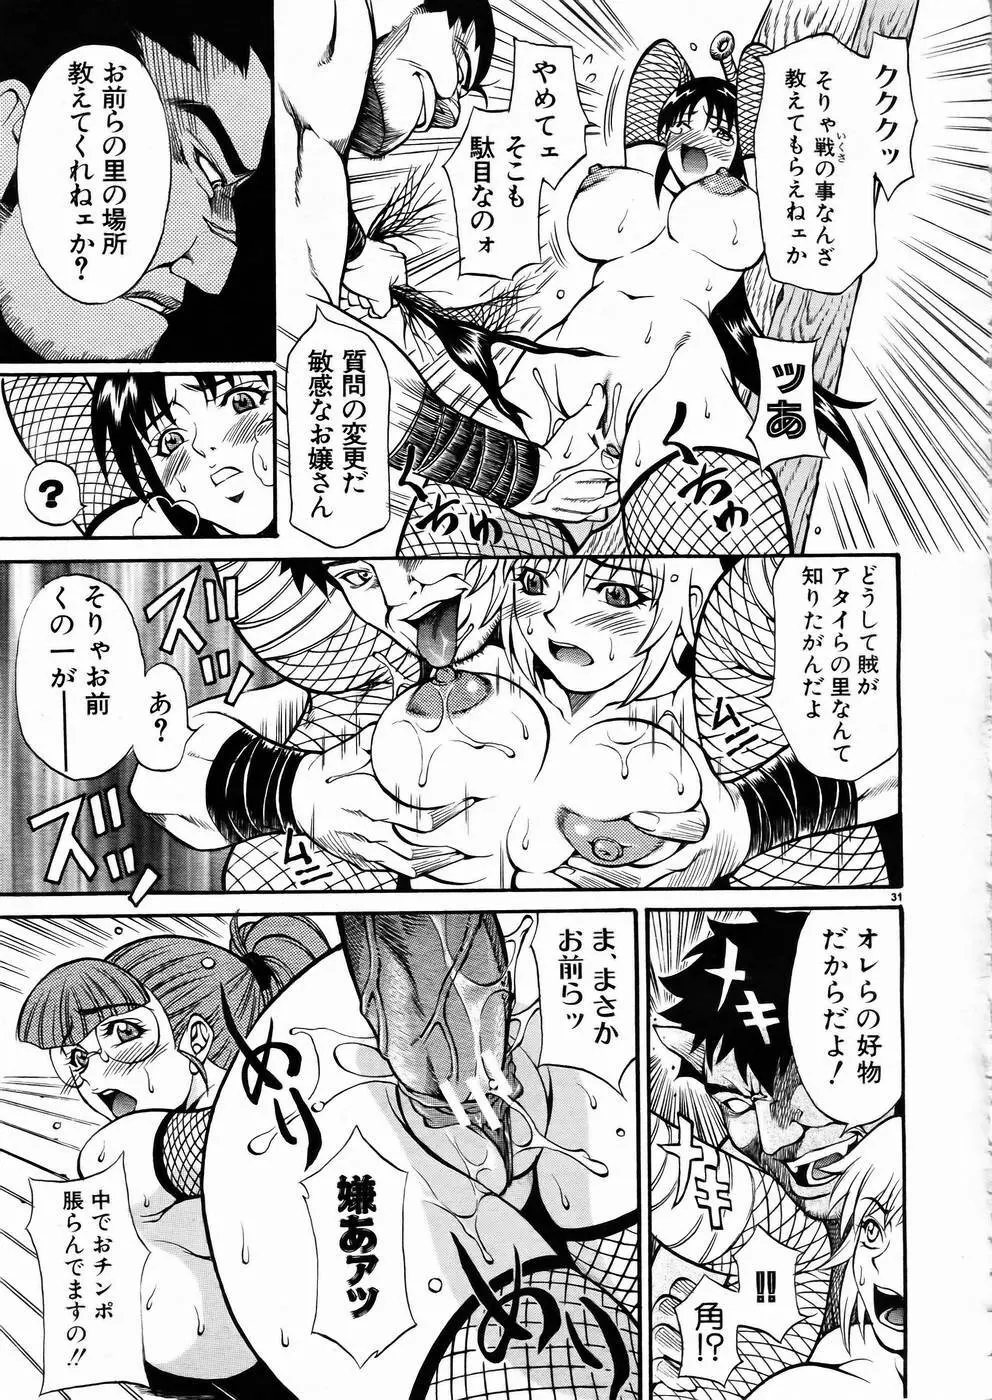 少女剣客凌辱コミック Vol.01 くノ一斬! 30ページ